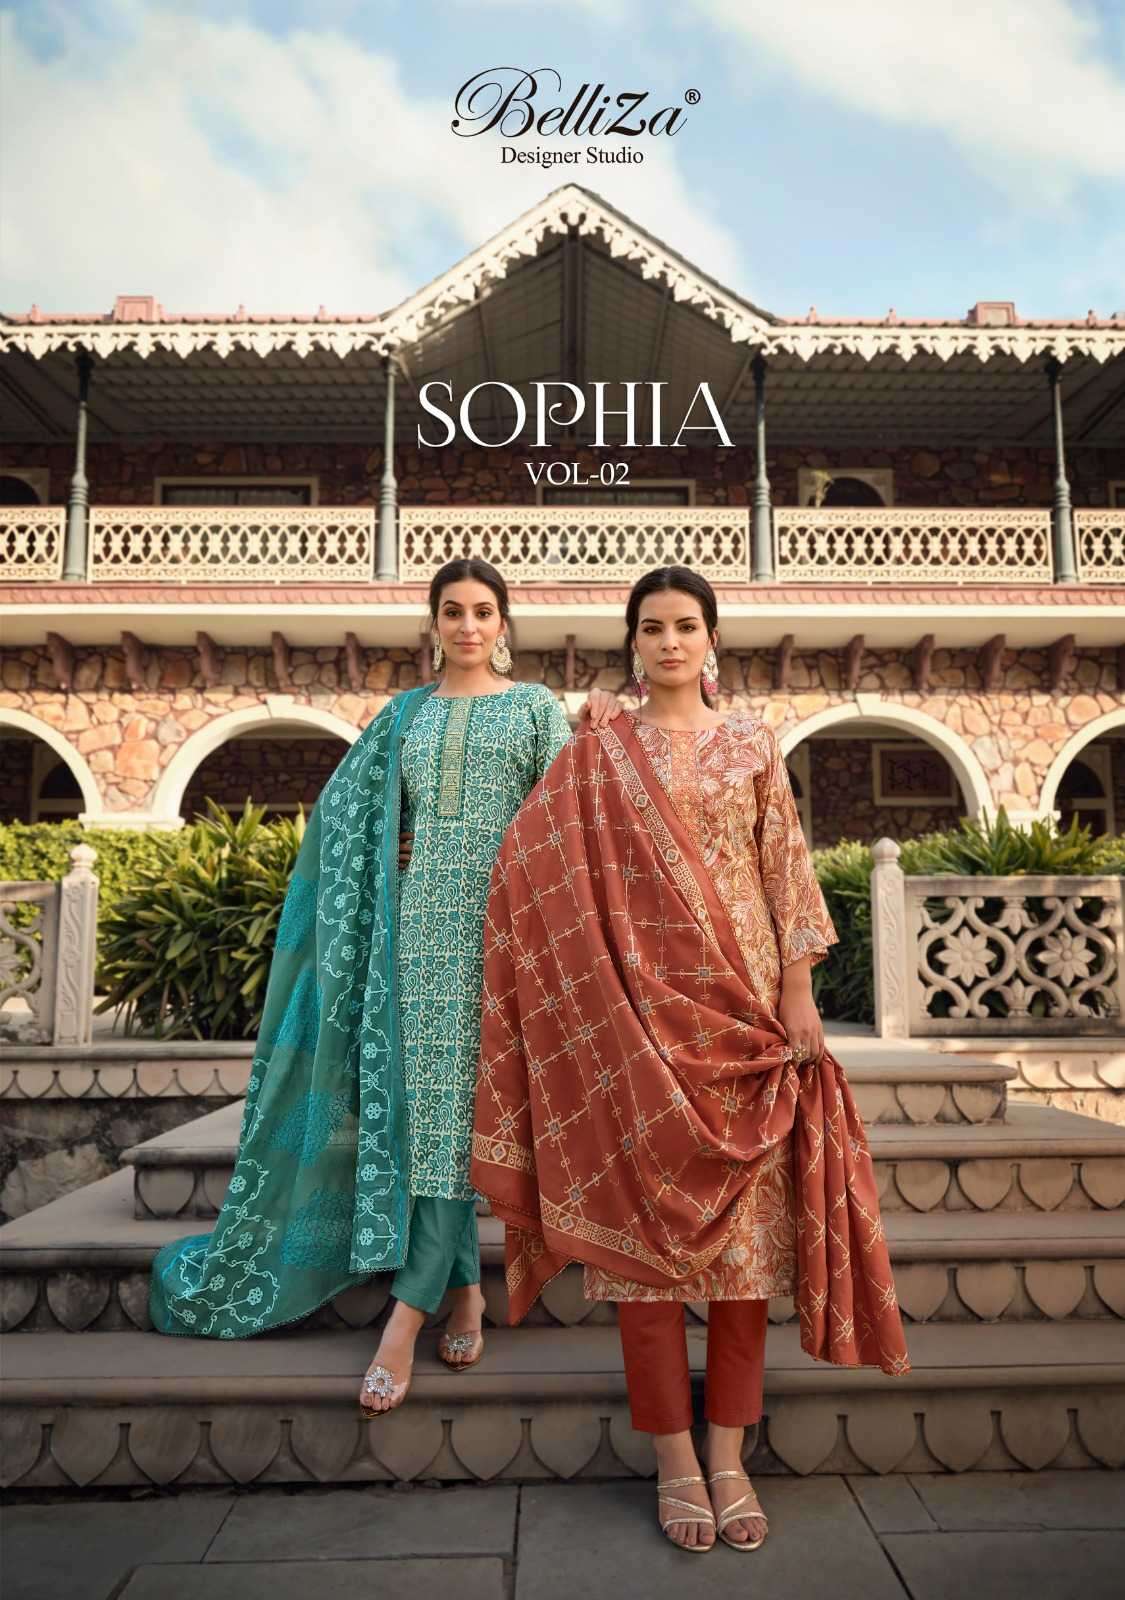 belliza sophia vol 2 series 894001-894008 Pure Blossom Cotton suit